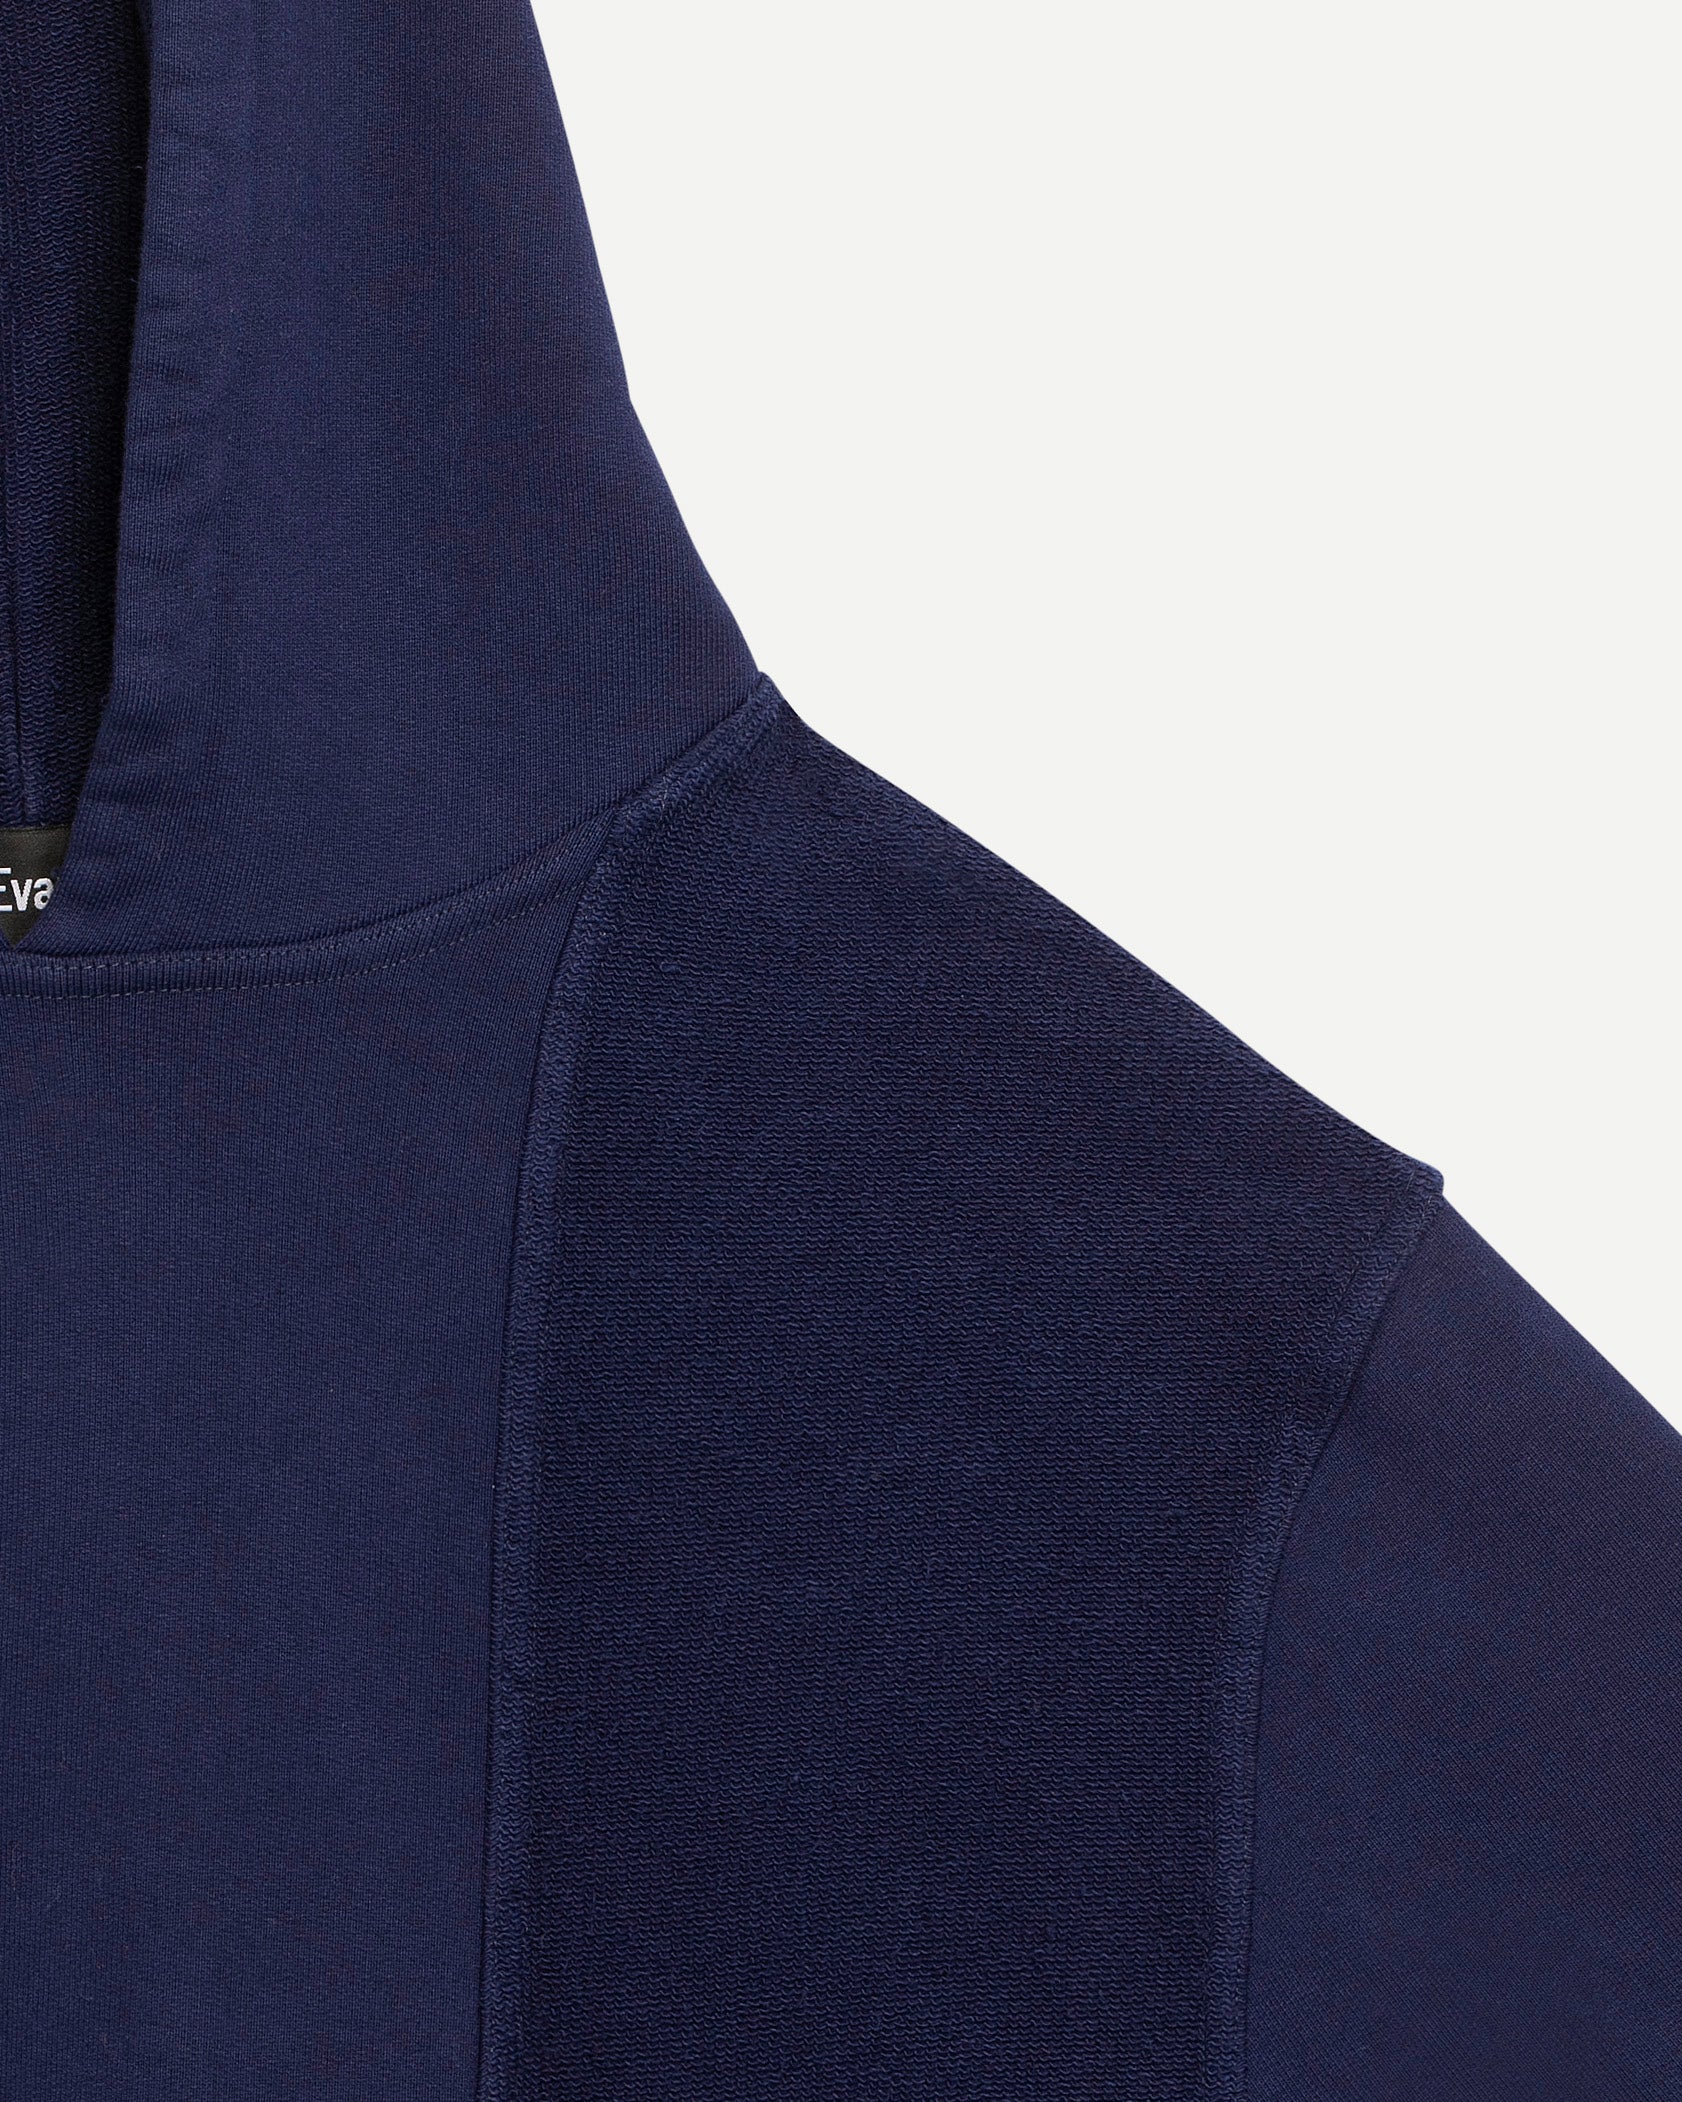 Hoodie de luxe pour homme Erevan, découpe bi-matière, poche centrale et capuche, en jersey de coton, fabriquée en france